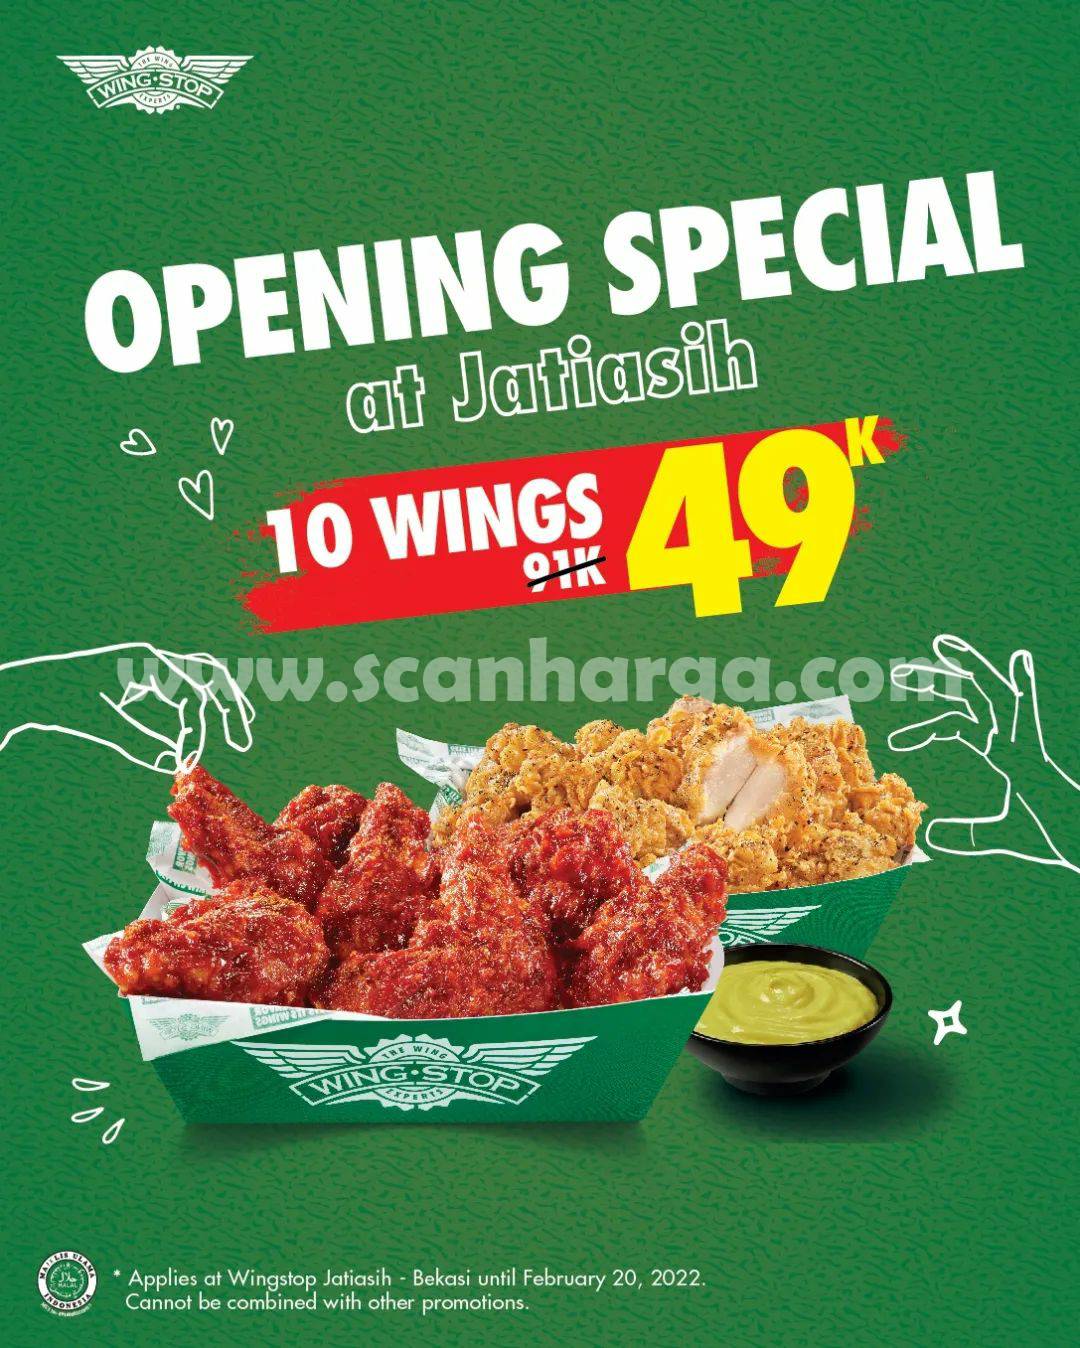 Wingstop Jatiasih Promo Grand Opening – Paket 10 Wings cuma Rp. 49.000